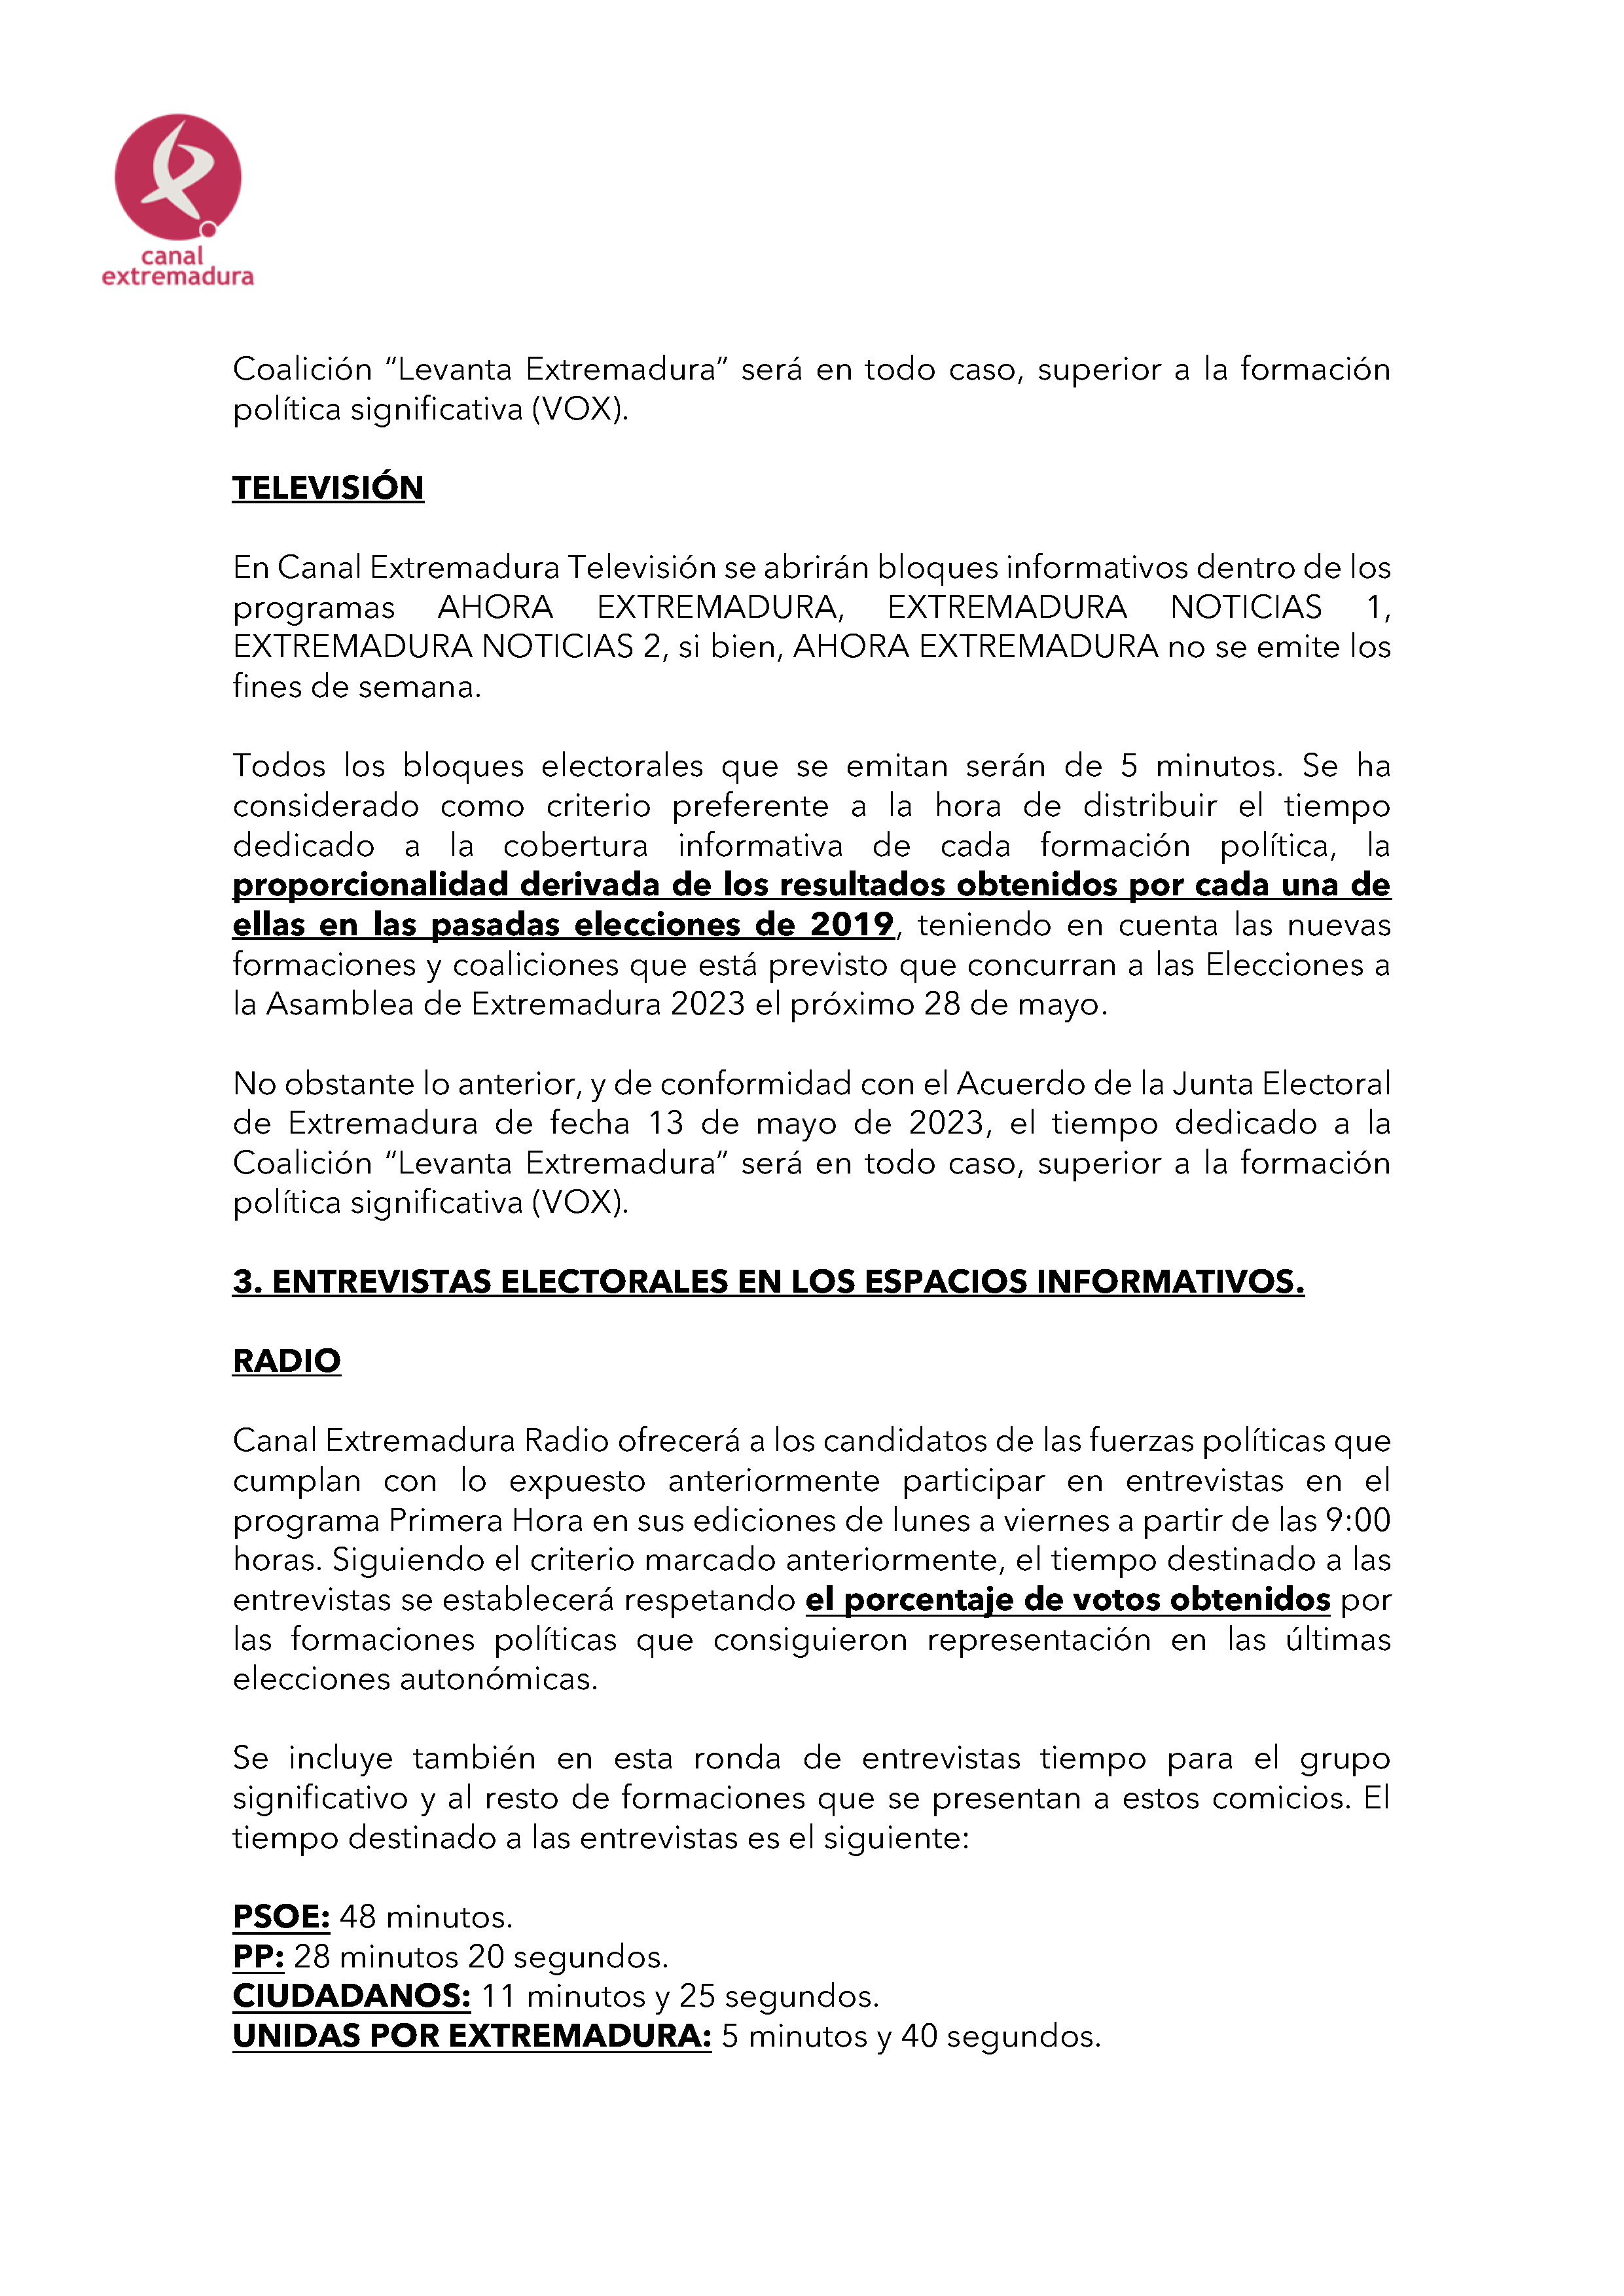 PLAN DE COBERTURA INFORMATIVA DE CANAL EXTREMADURA ELECCIONES AUTONÓMICAS 2023. Pag 6